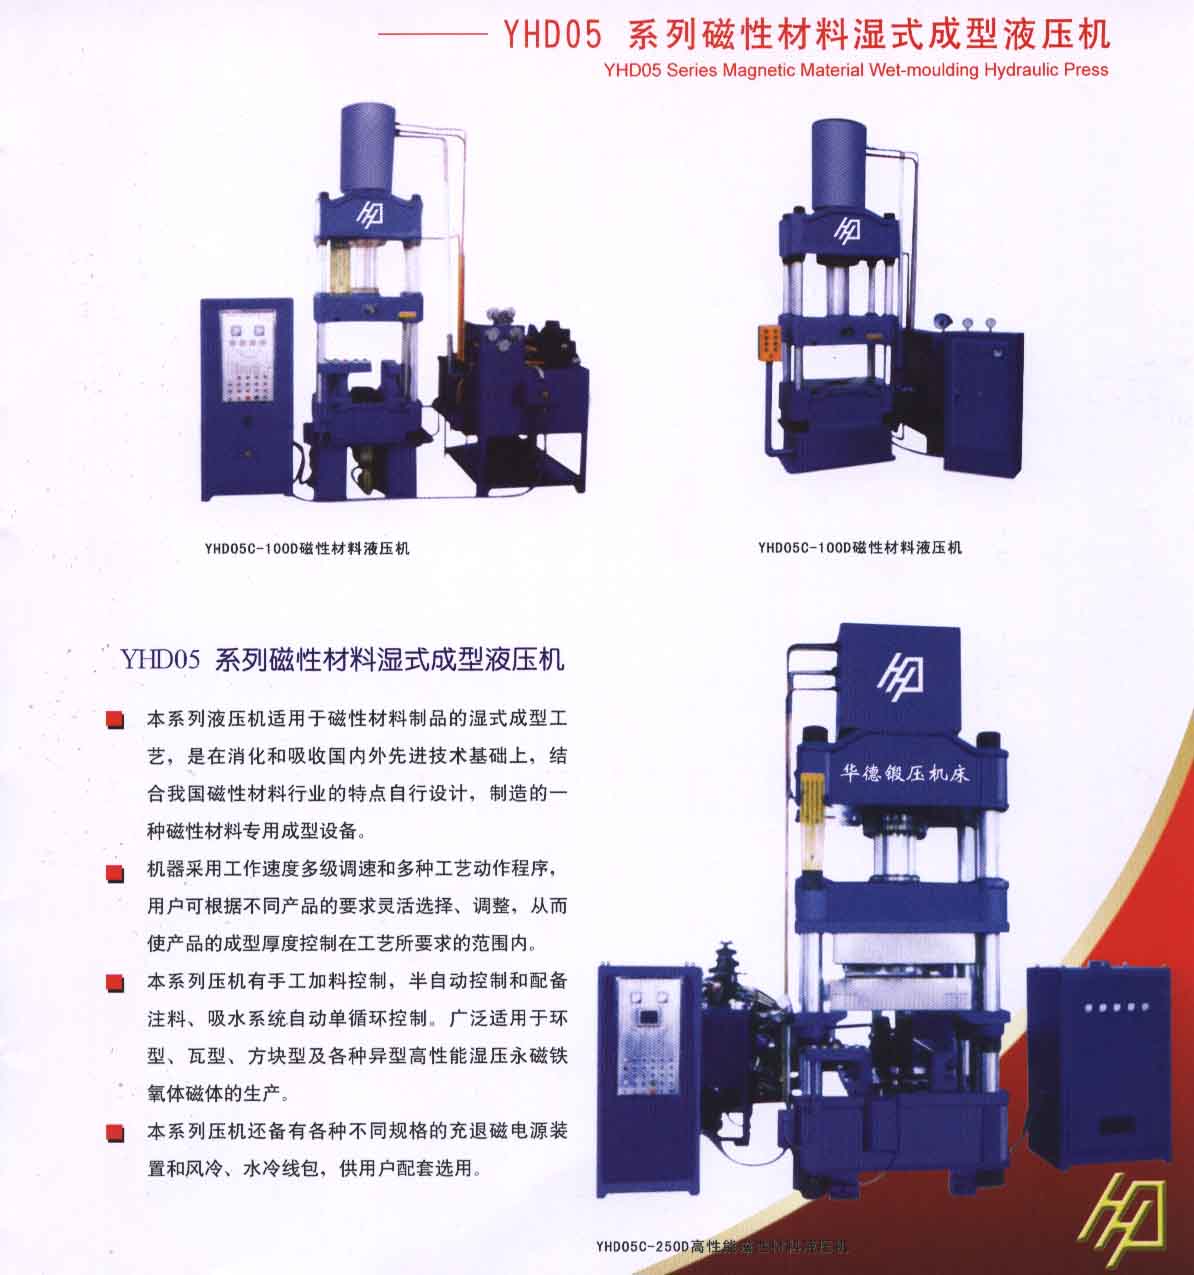 Power Press & Hydraulic Press